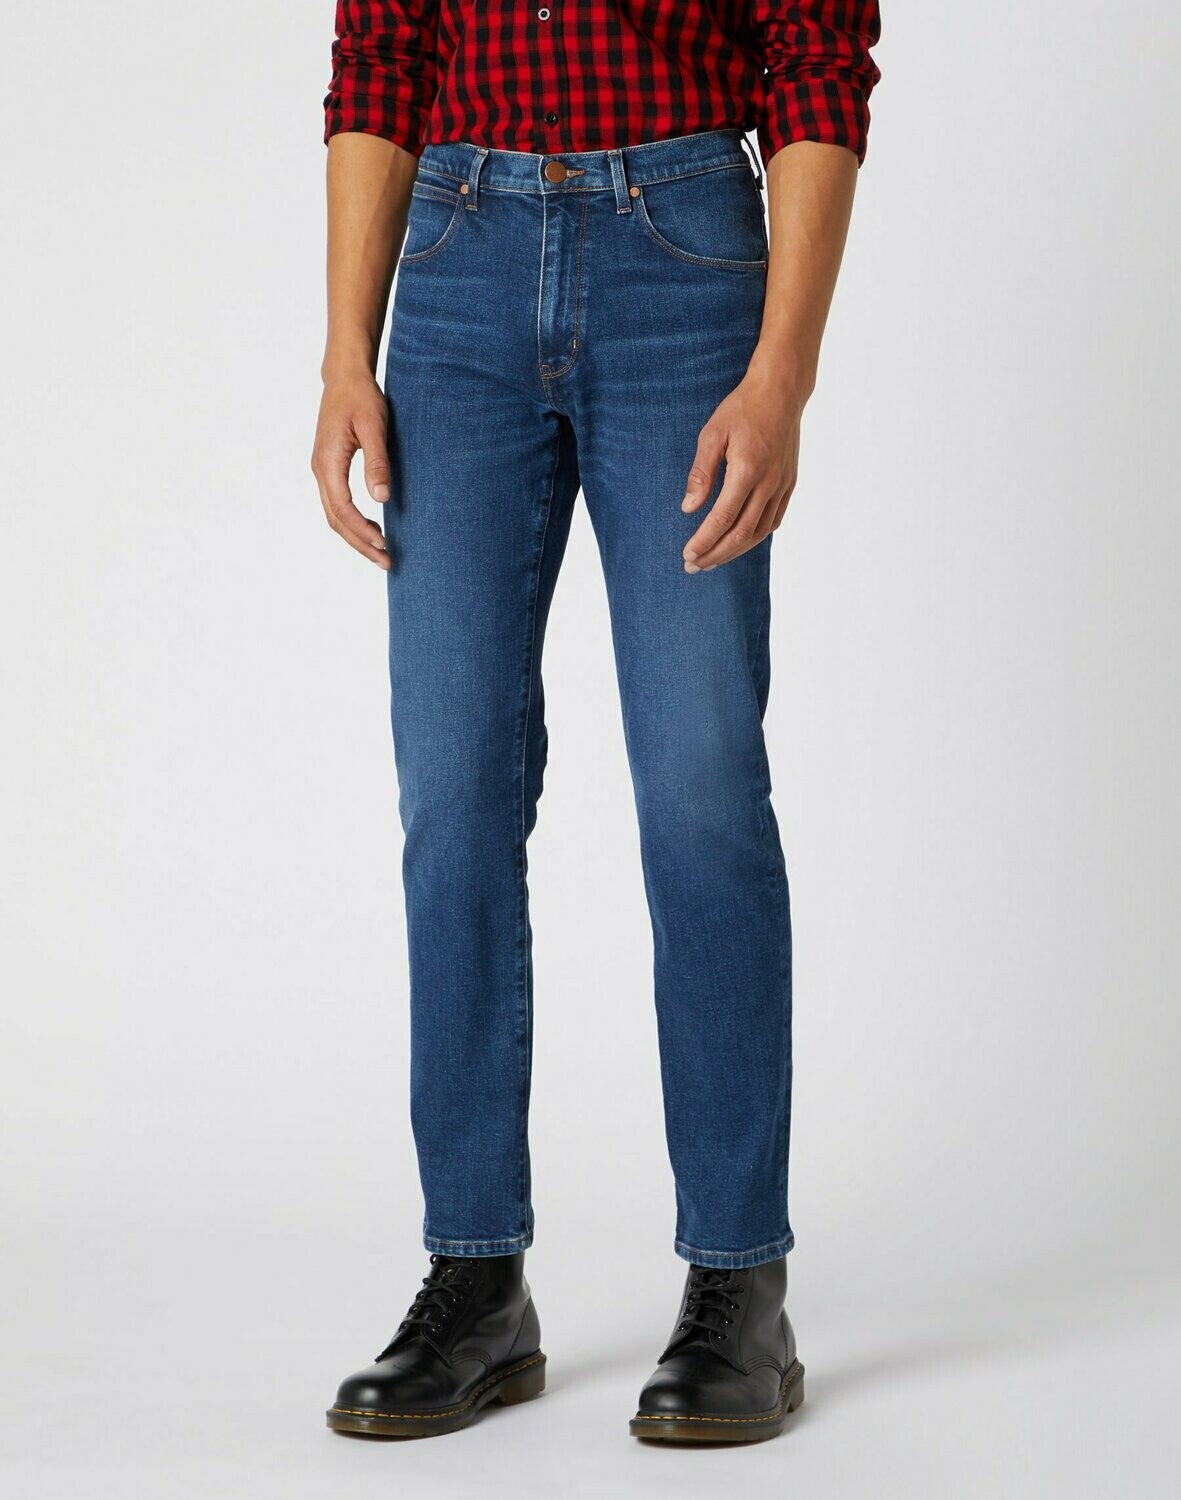 Wrangler Arizona Stretch Jeans